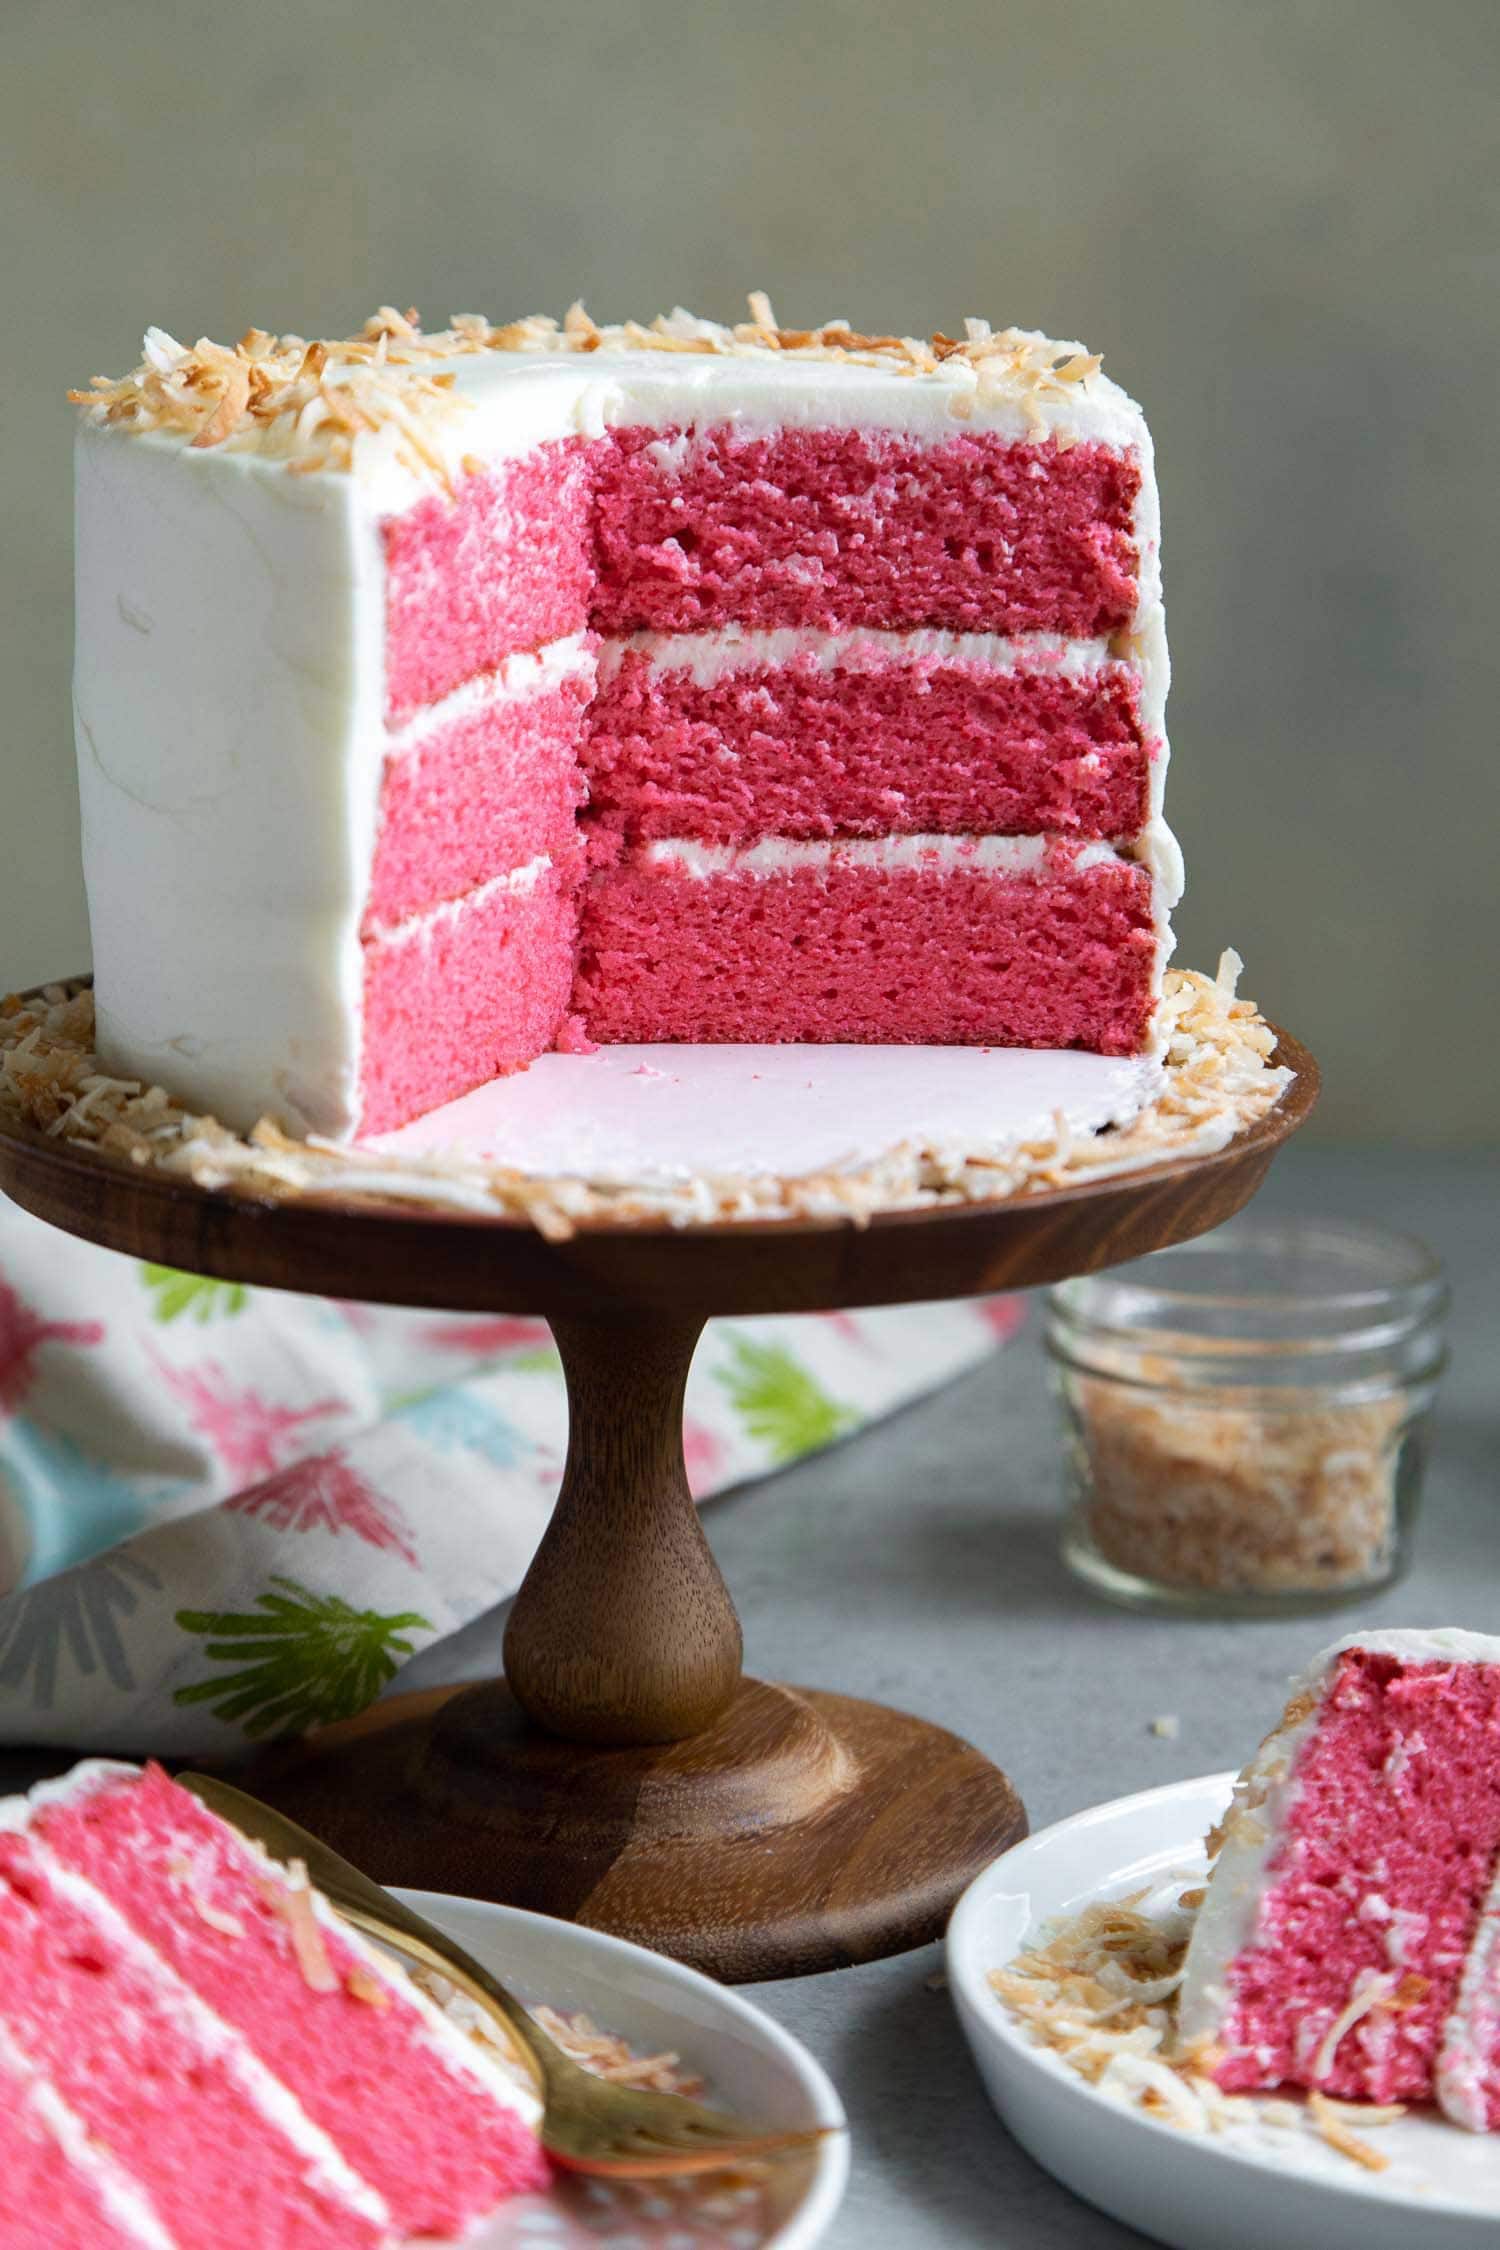 Pink Coconut Layer Cake. Cake made using Pink Palace Pancake Mix.